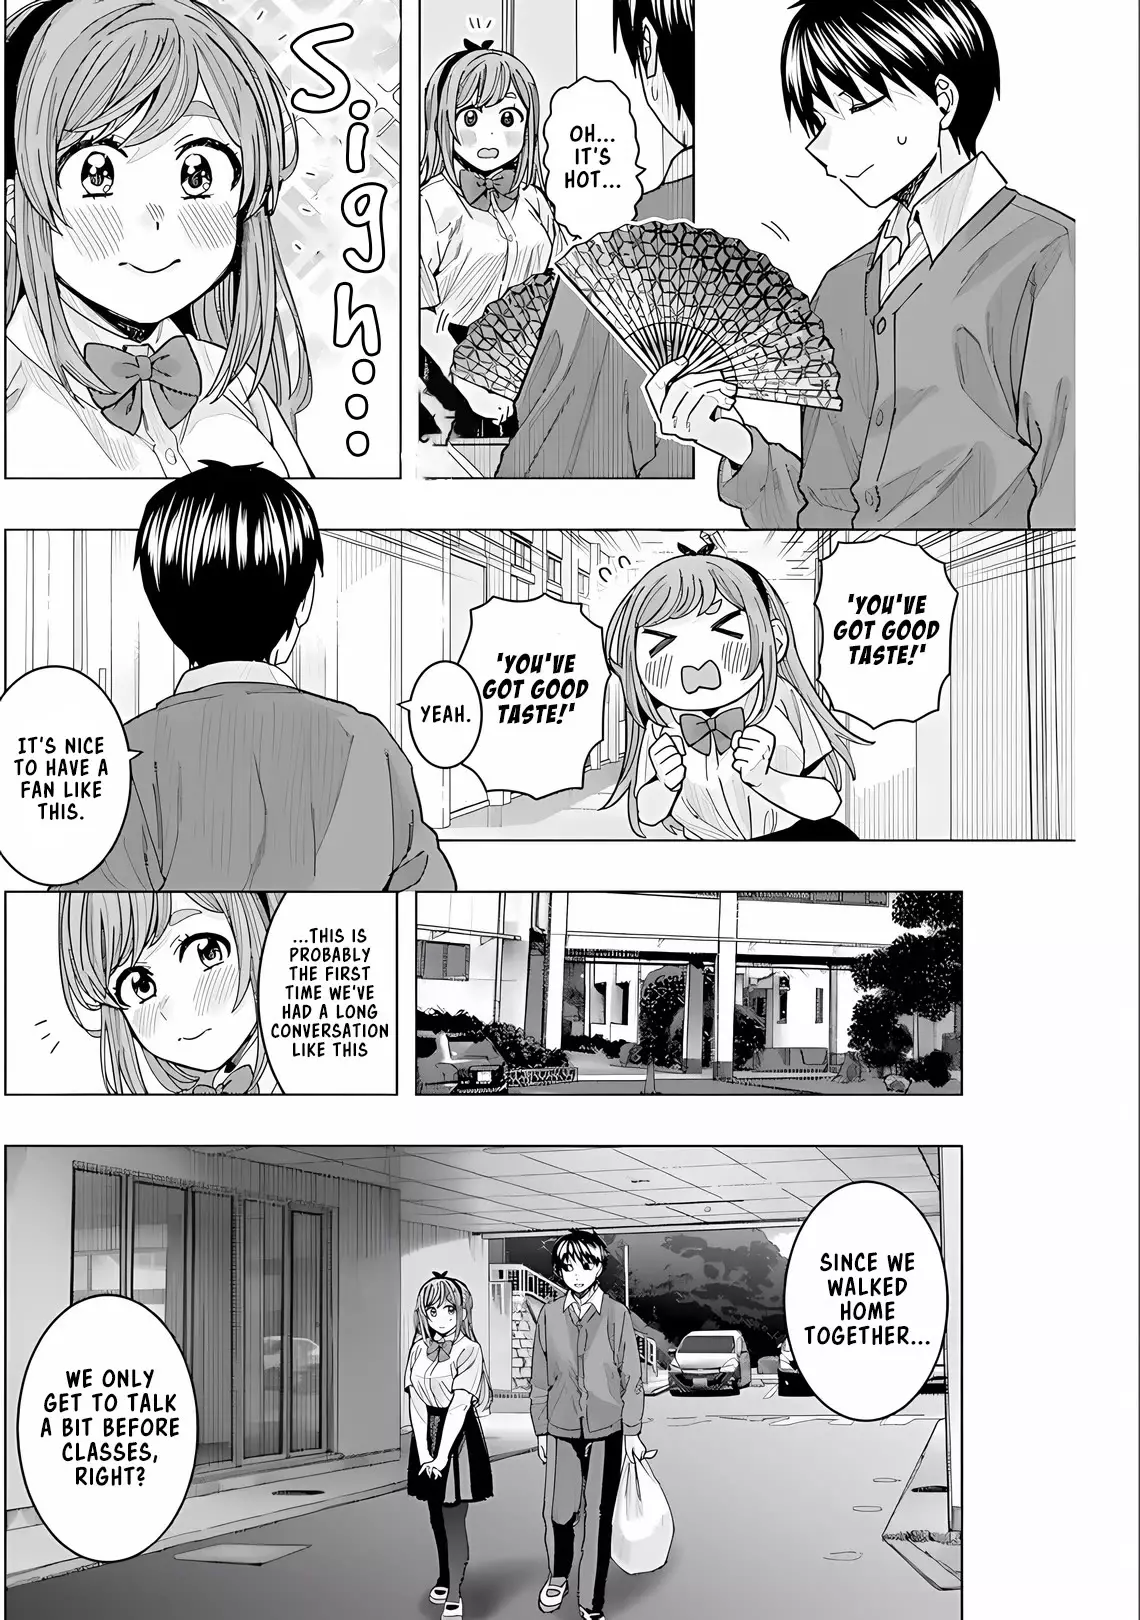 "nobukuni-San" Does She Like Me? - 27 page 13-f9fa66a2